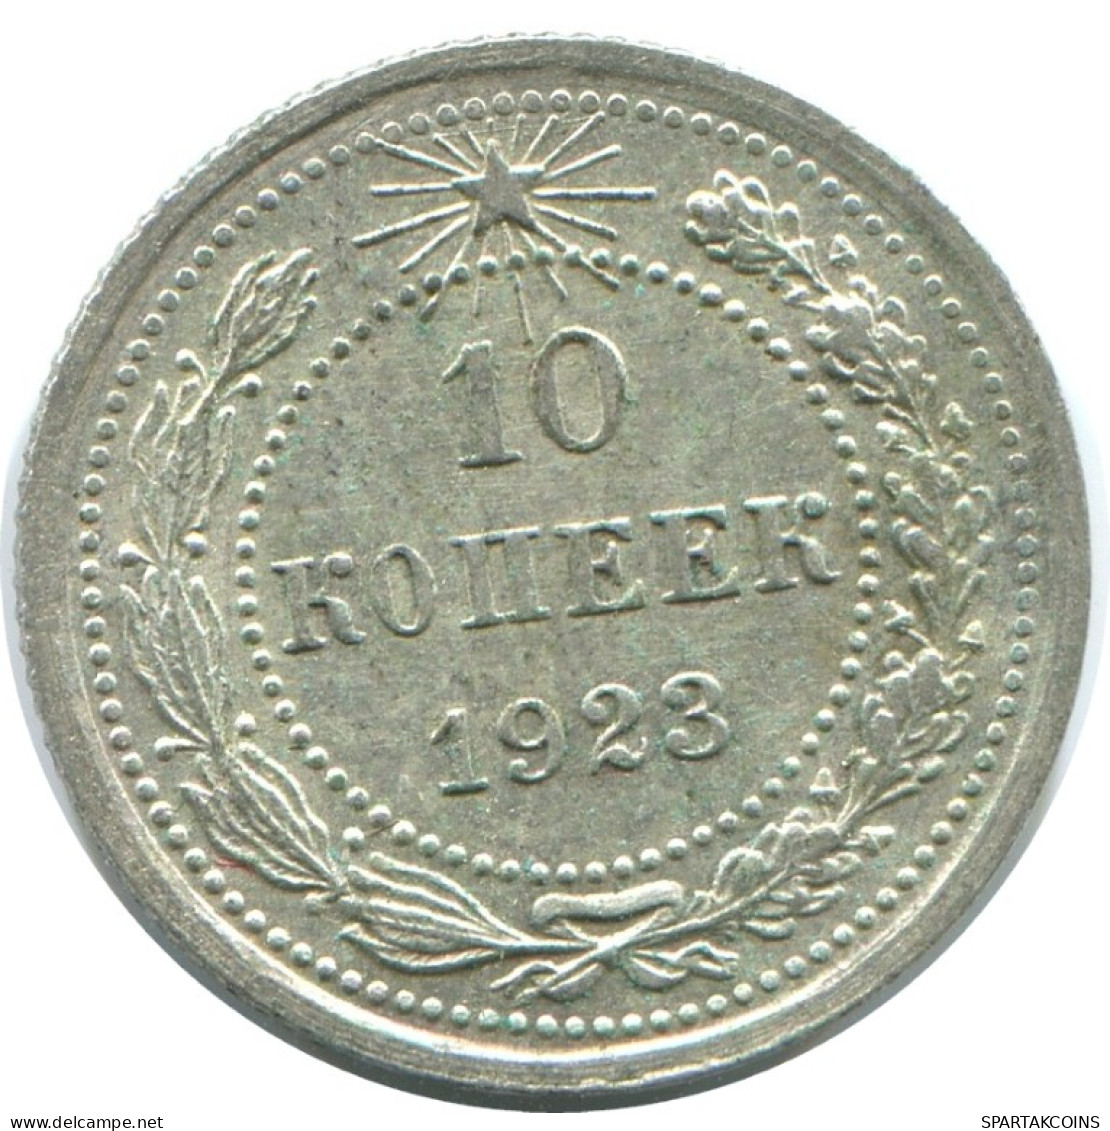 10 KOPEKS 1923 RUSSLAND RUSSIA RSFSR SILBER Münze HIGH GRADE #AE906.4.D.A - Russia